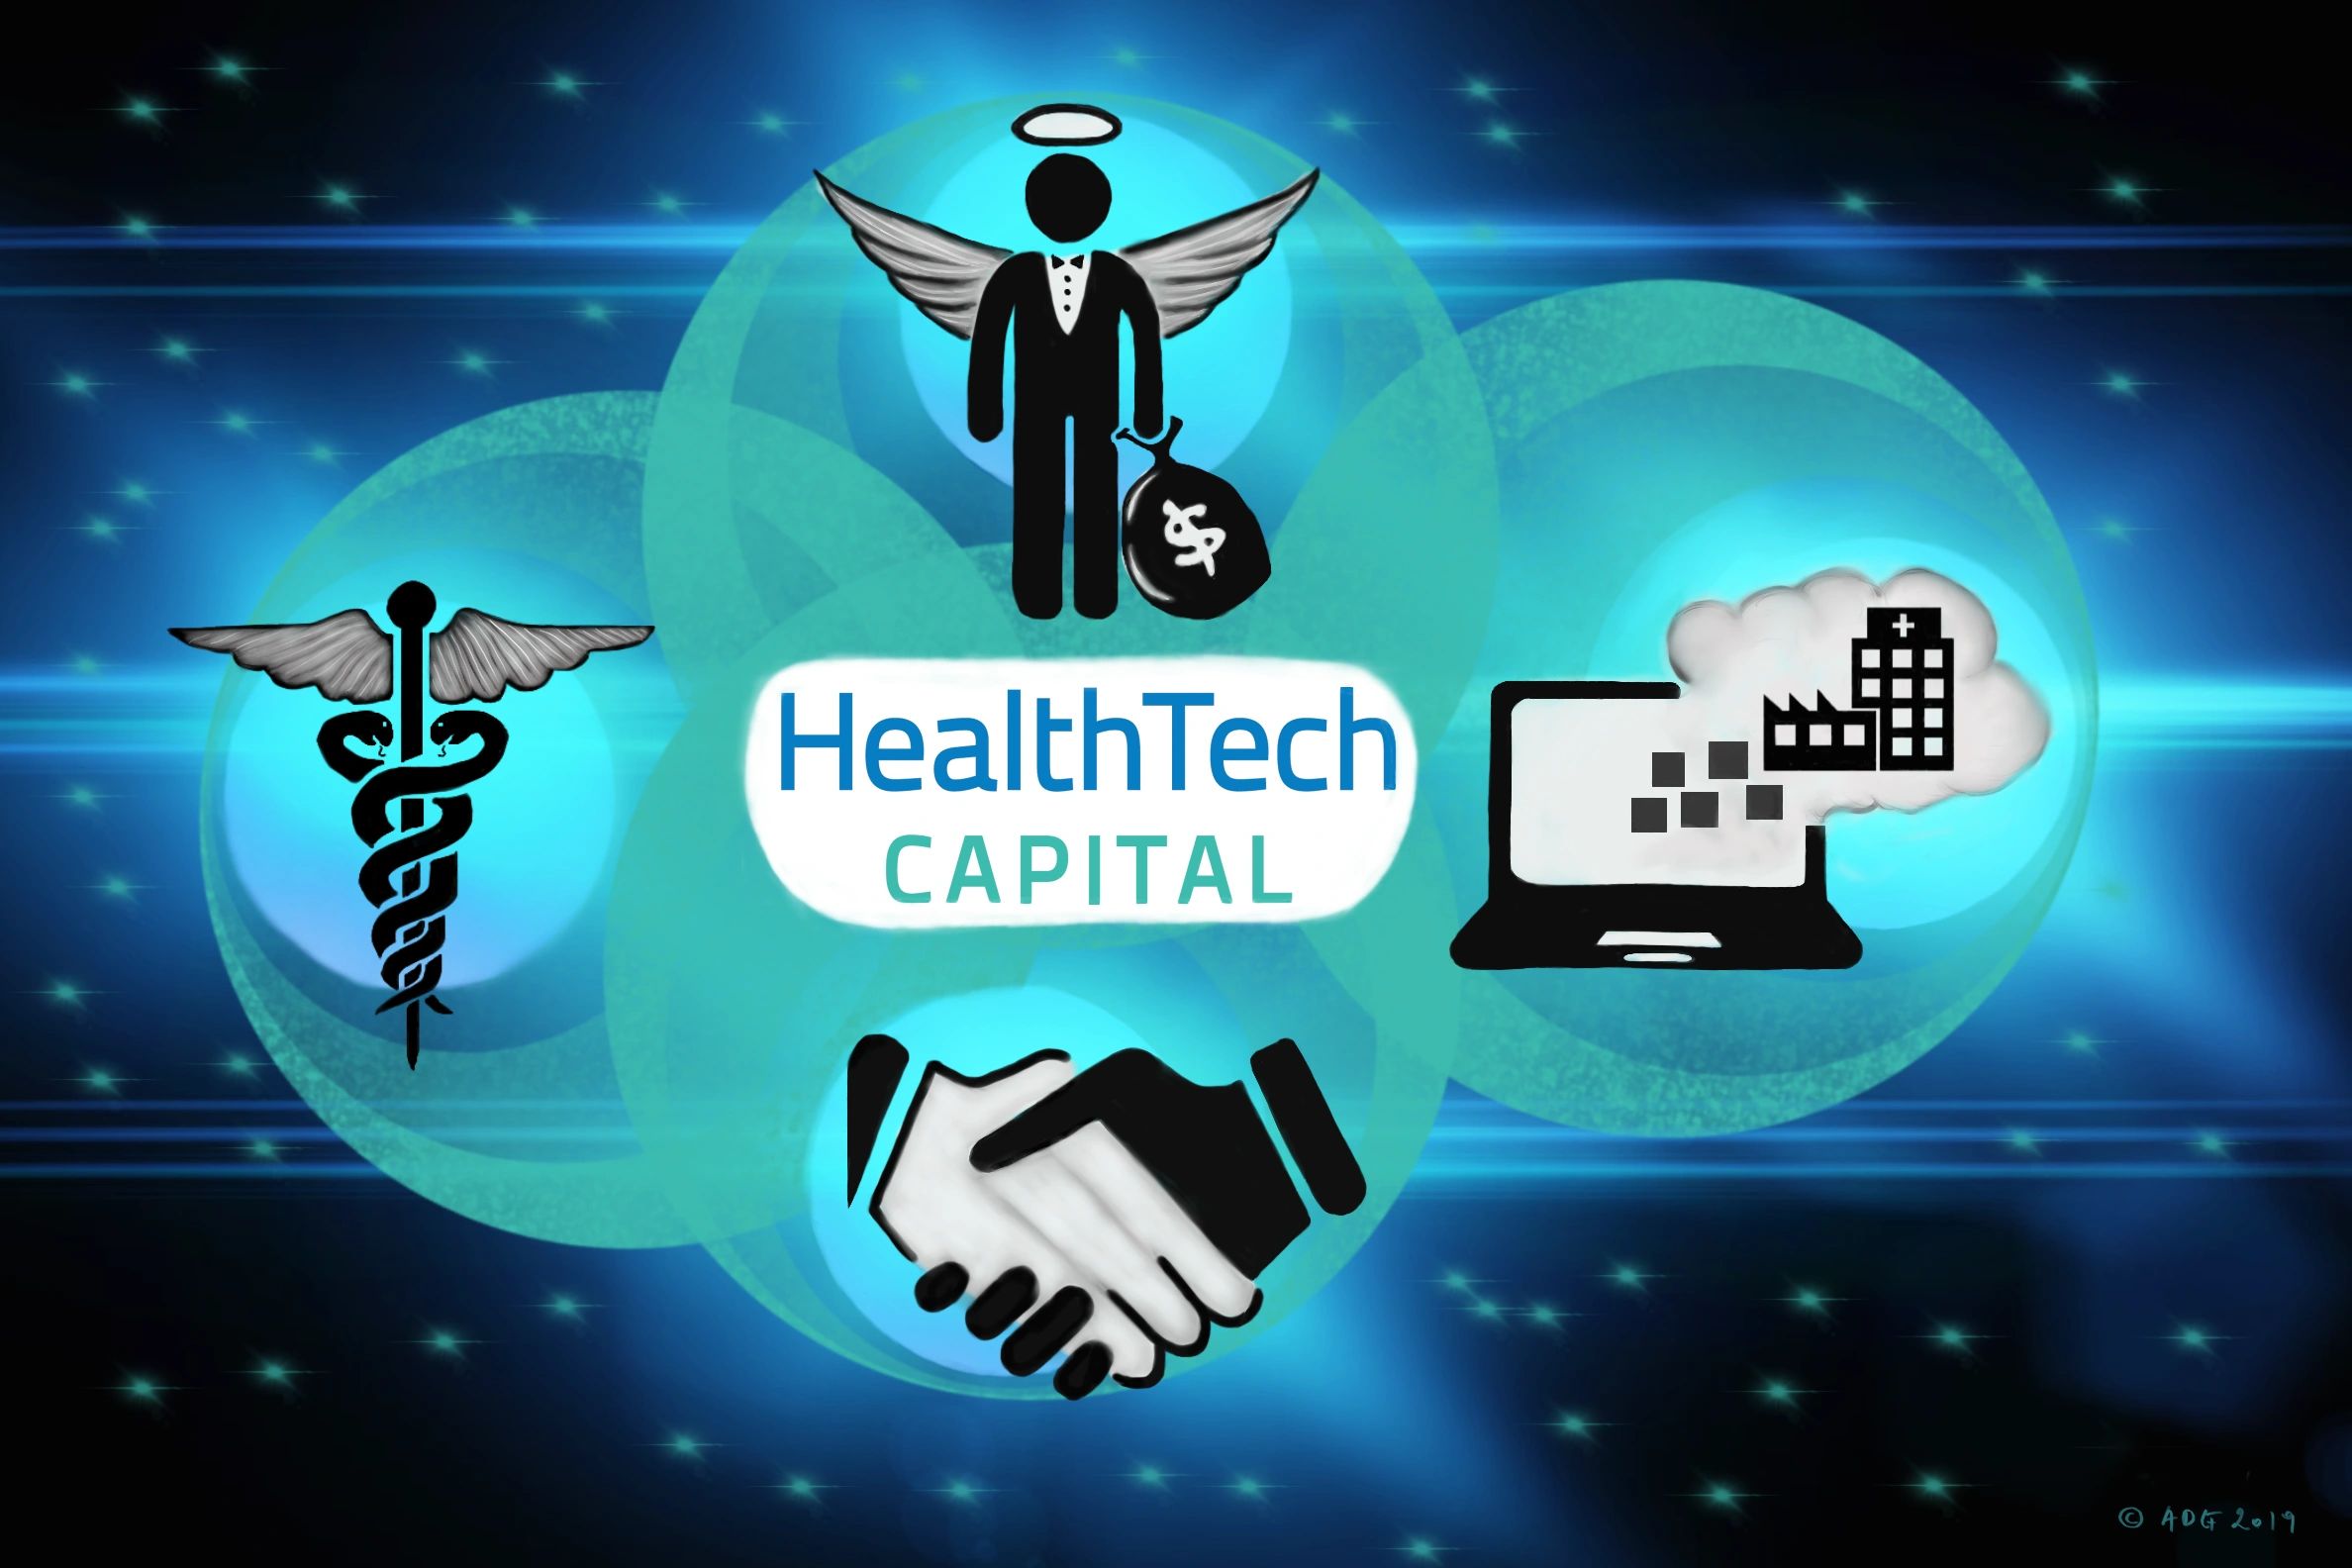 healthtech capital ecosystem